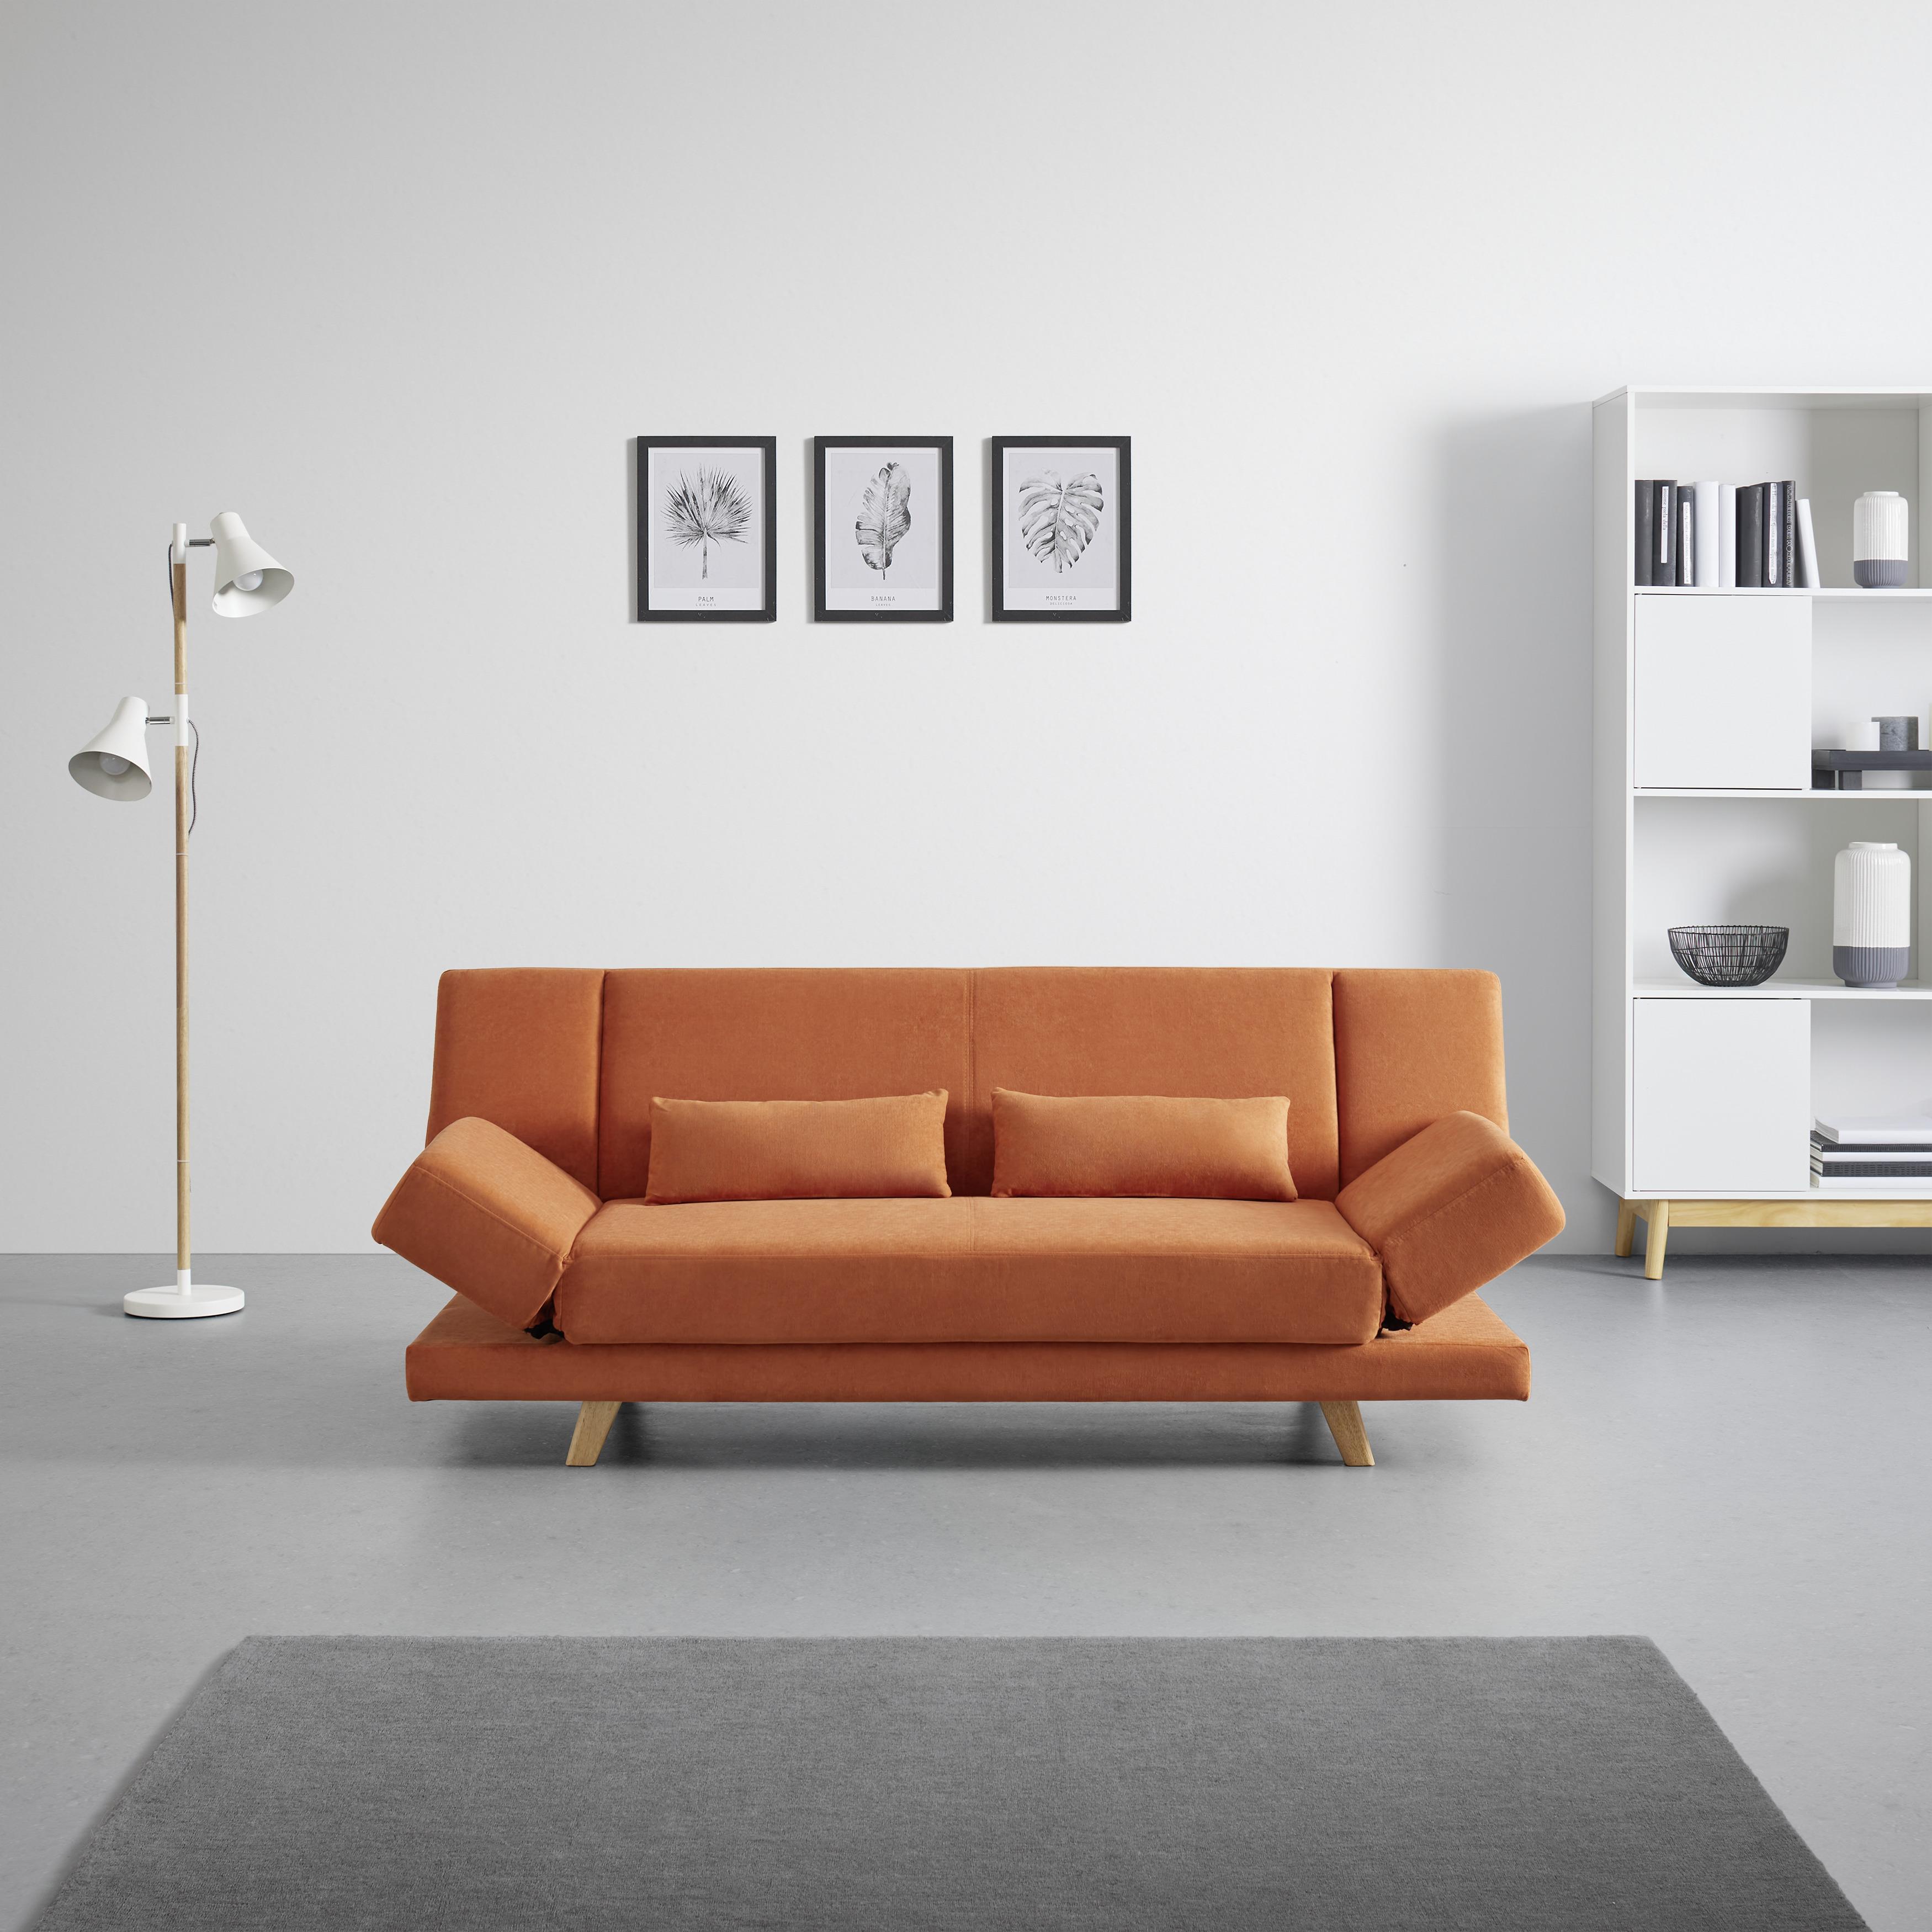 Zofa Funky, Z Ležiščem - naravne barve/oranžna, Moderno, tekstil/les (183/73/79cm) - Bessagi Home